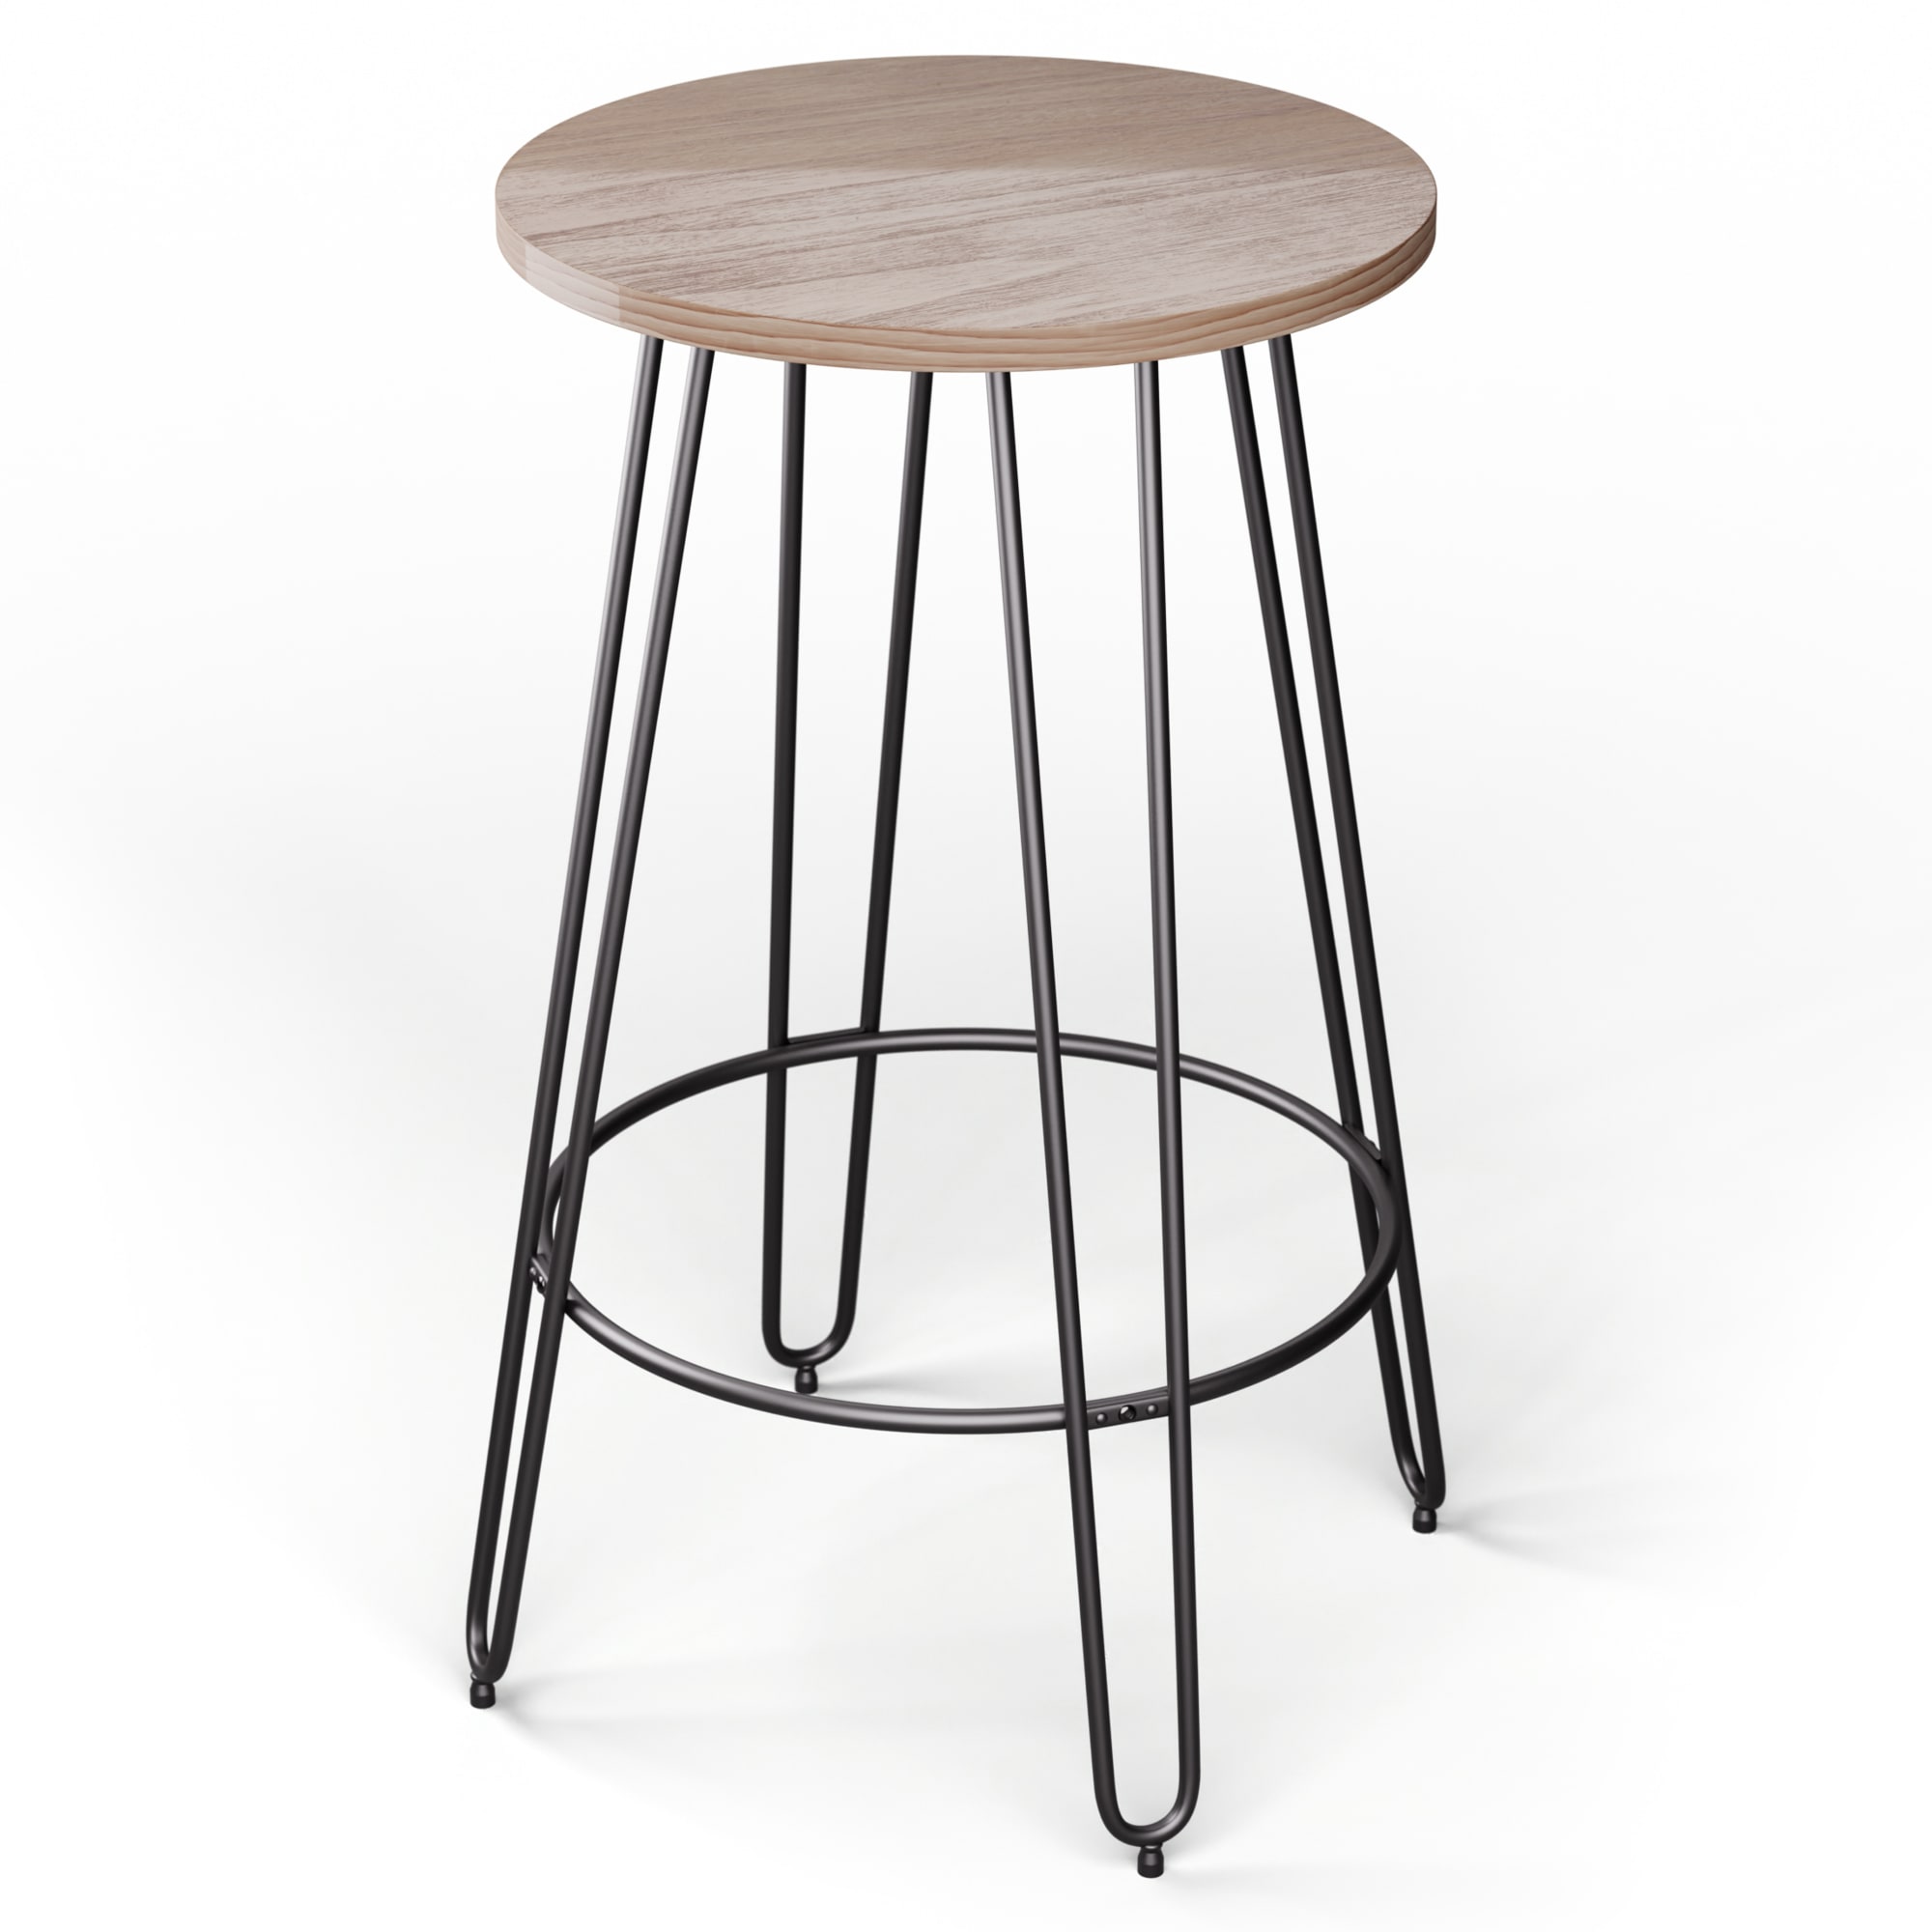 Blumfeldt bisztróasztal hamilton o60 cm fa acélkeret